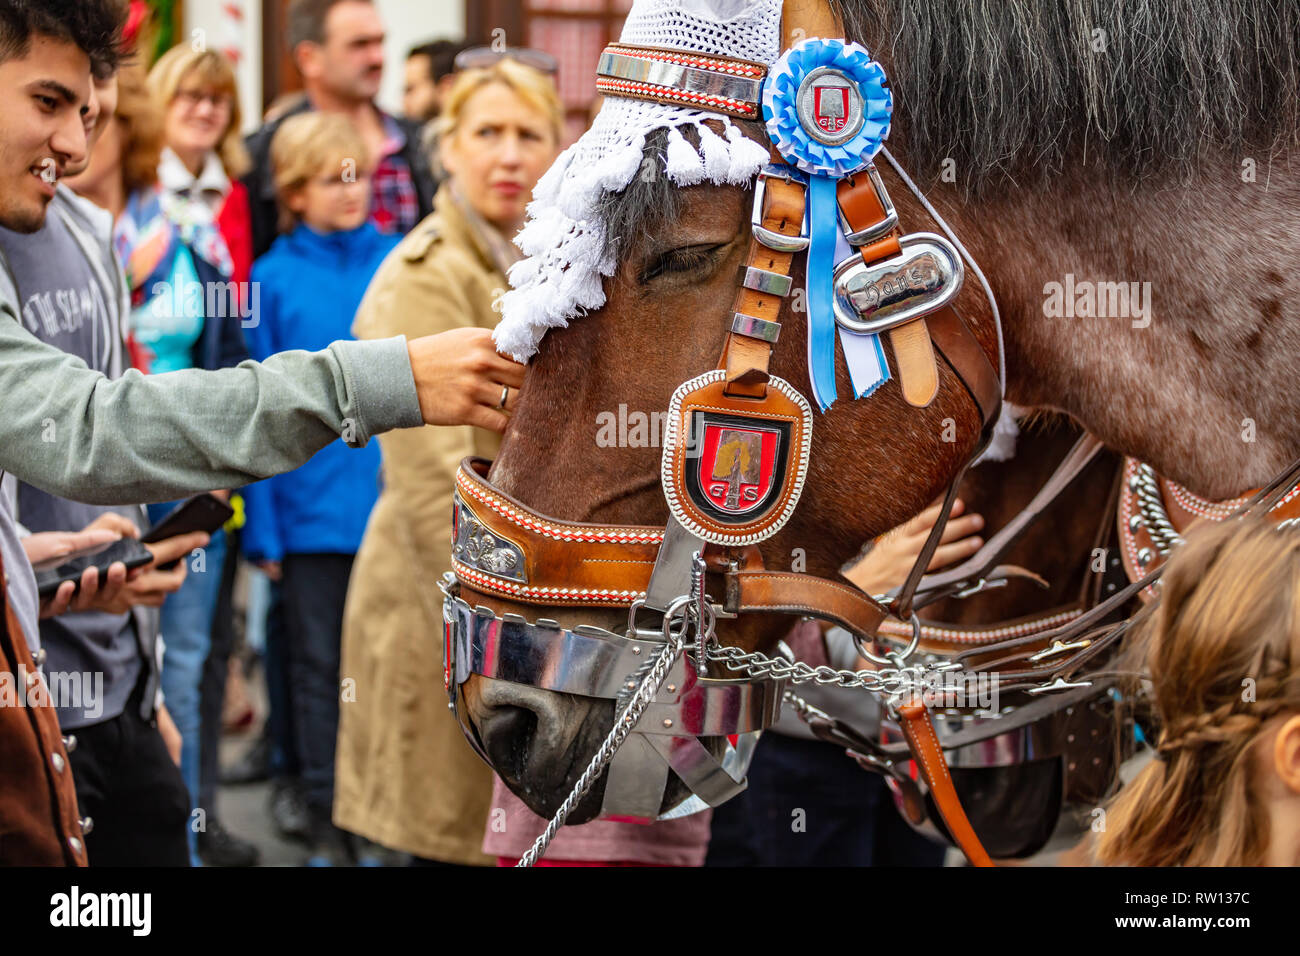 Cavallo e costume immagini e fotografie stock ad alta risoluzione - Alamy